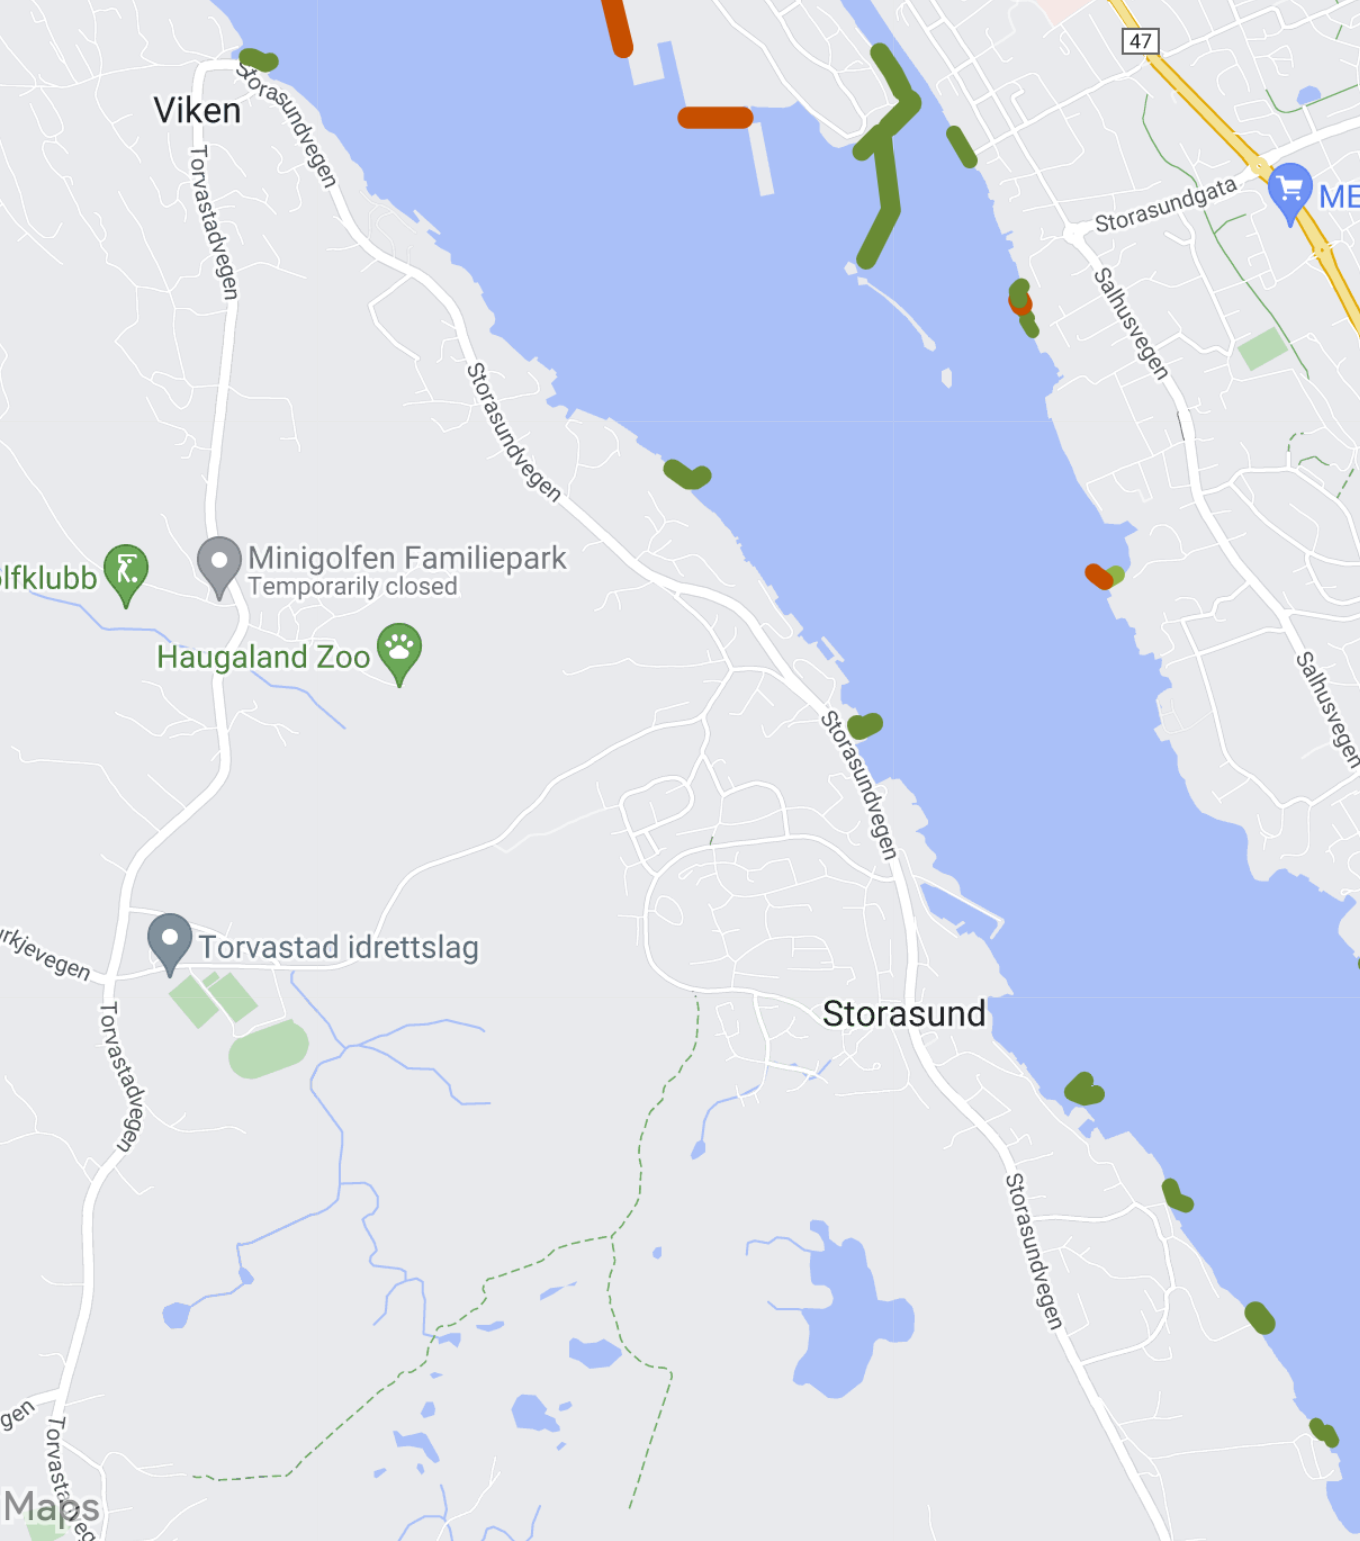 Dette er et kart som viser videotransekter kjørt i Storasund uten funn av havnespy